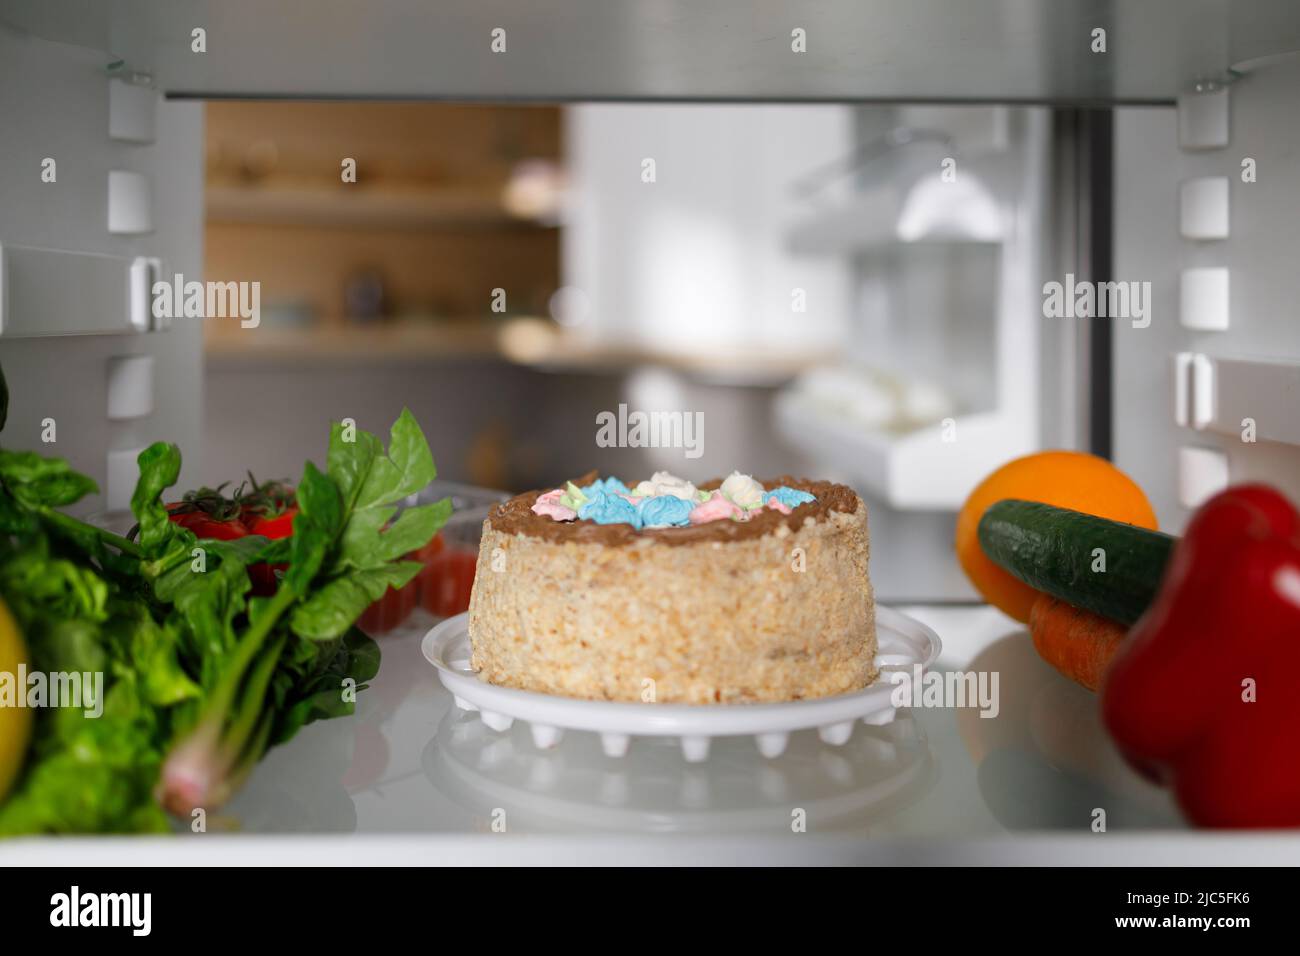 Deliziosa torta e verdure sul ripiano del frigorifero Foto Stock